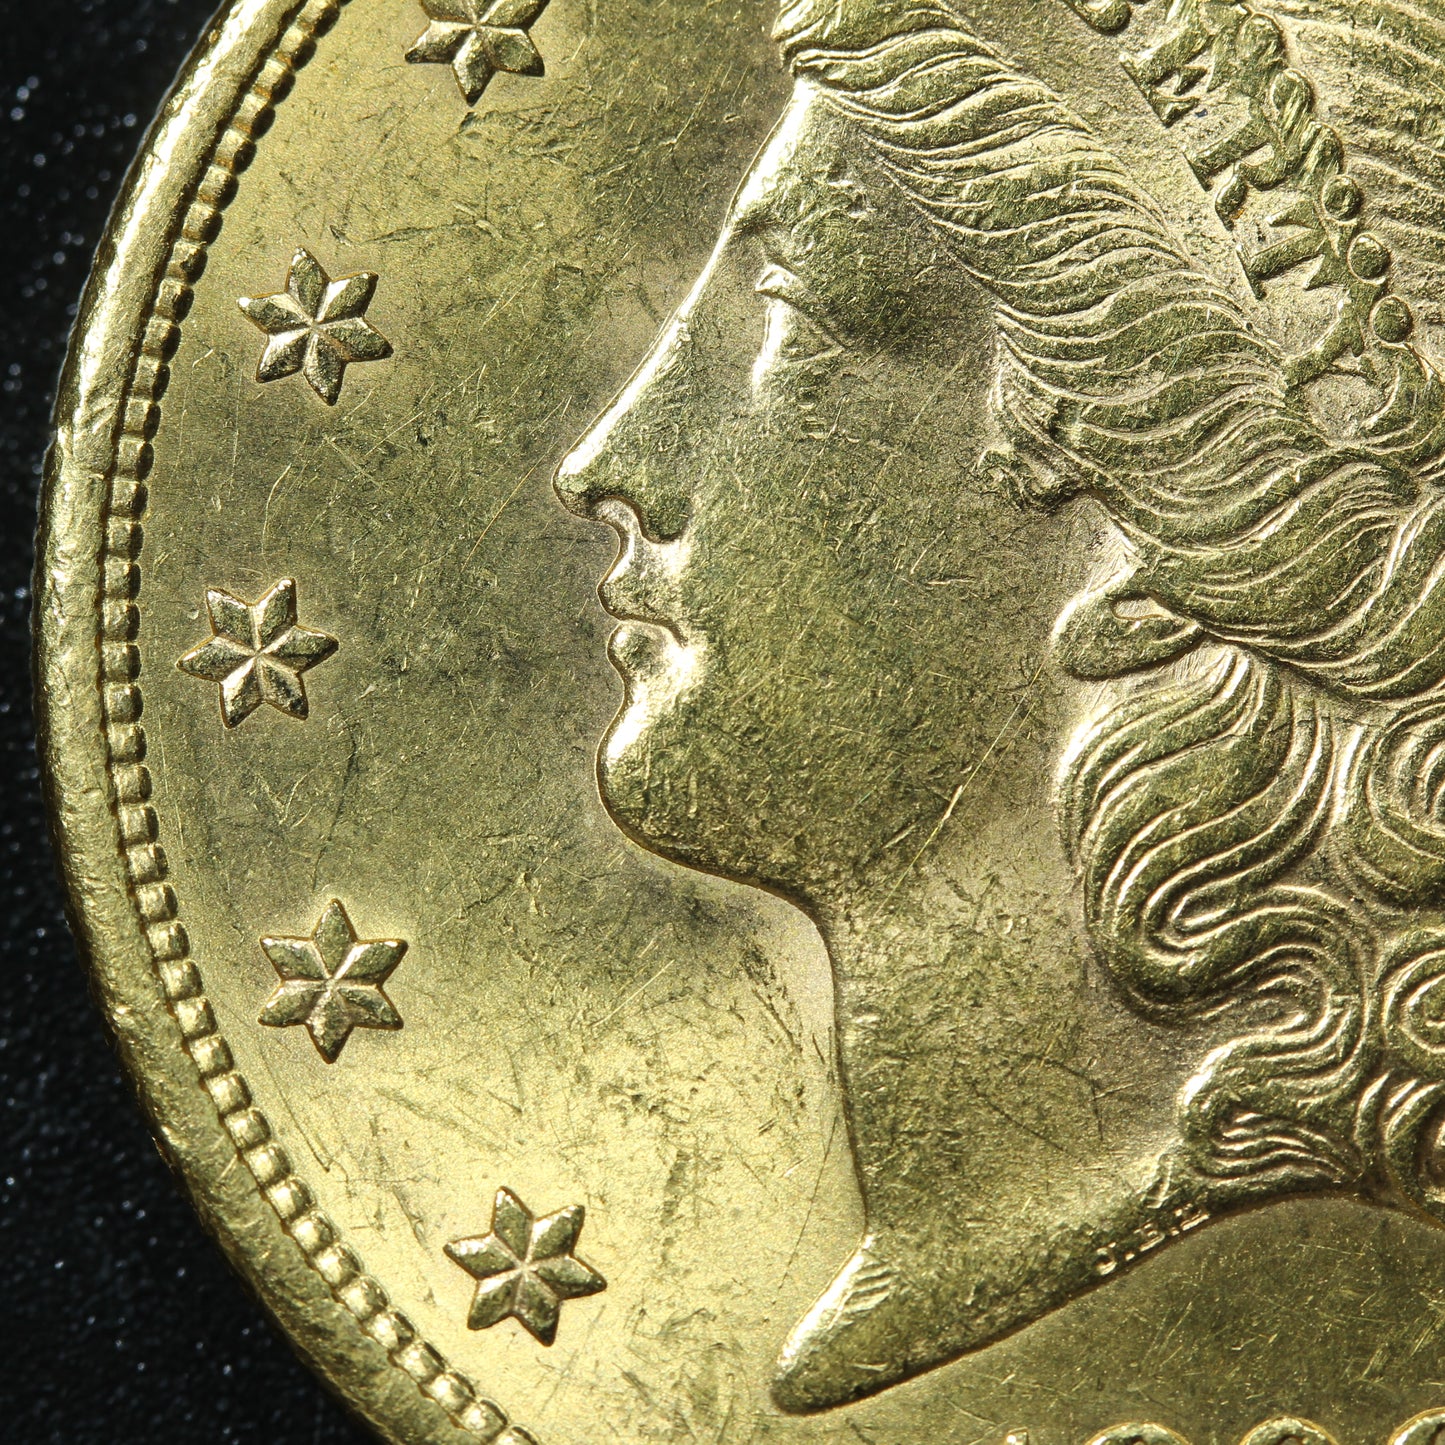 1898 S Liberty Head $20 Dollar Gold Double Eagle Gold Coin San Francisco